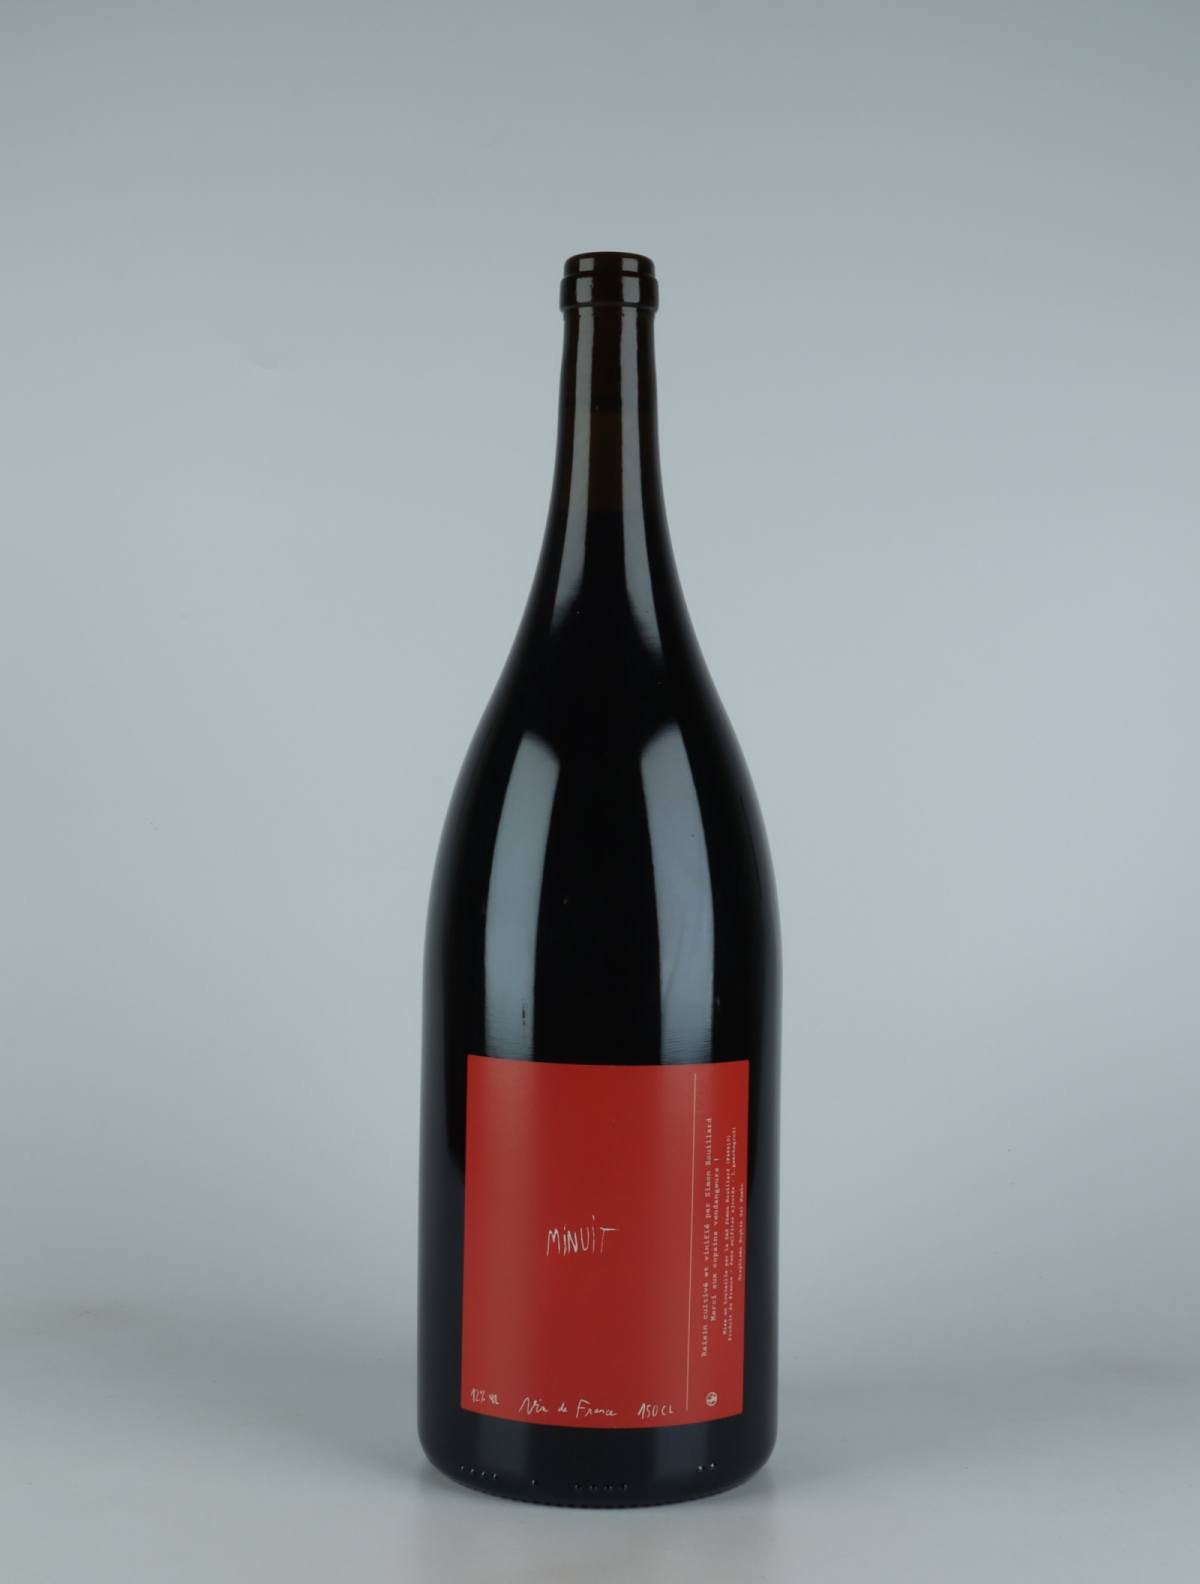 En flaske 2021 Minuit Rødvin fra Simon Rouillard, Loire i Frankrig